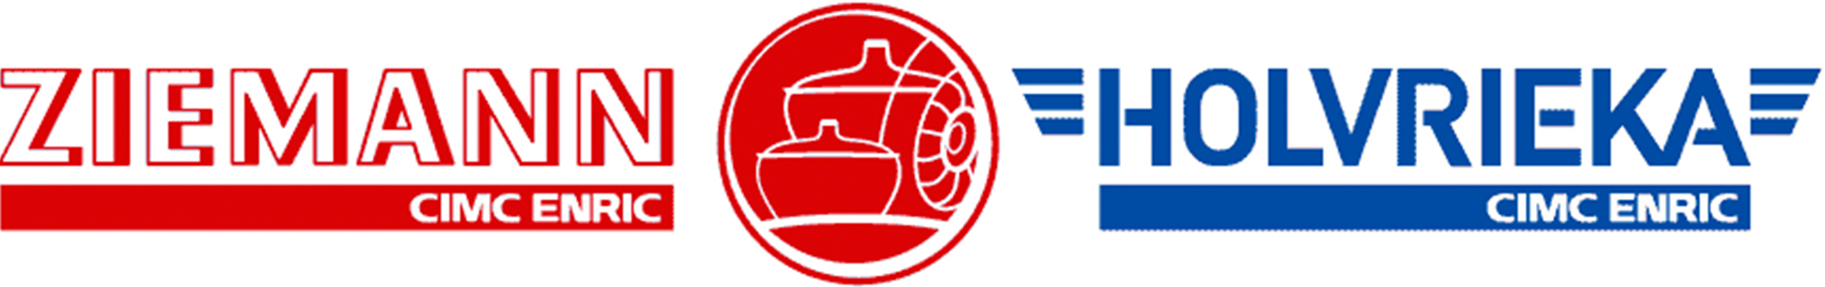 Ziemann Holvrieka logo Metalfinish Group